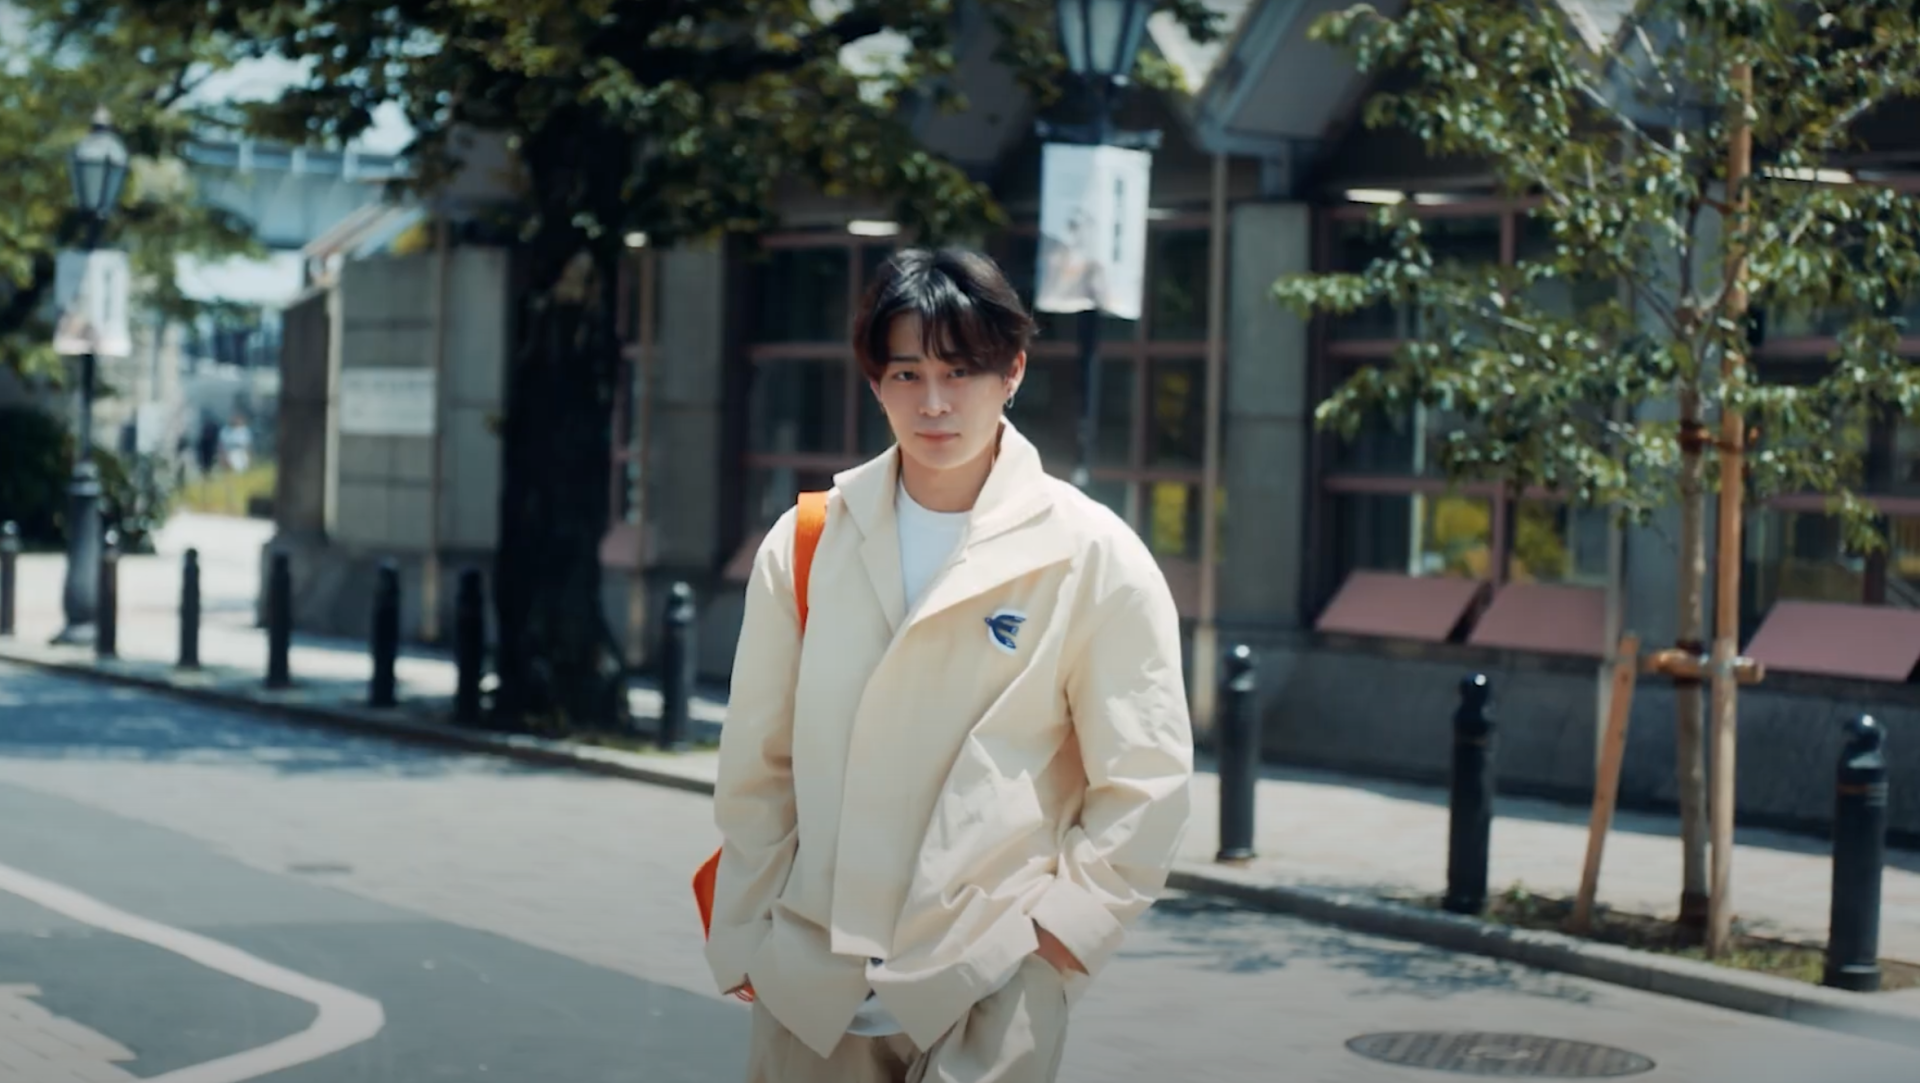 Hoàng Yến Chibi đầy 'thái độ', bị 'trai đẹp nhiều tiền' chặn đường trong teaser MV 'Sốc Nhiệt' - ảnh 3